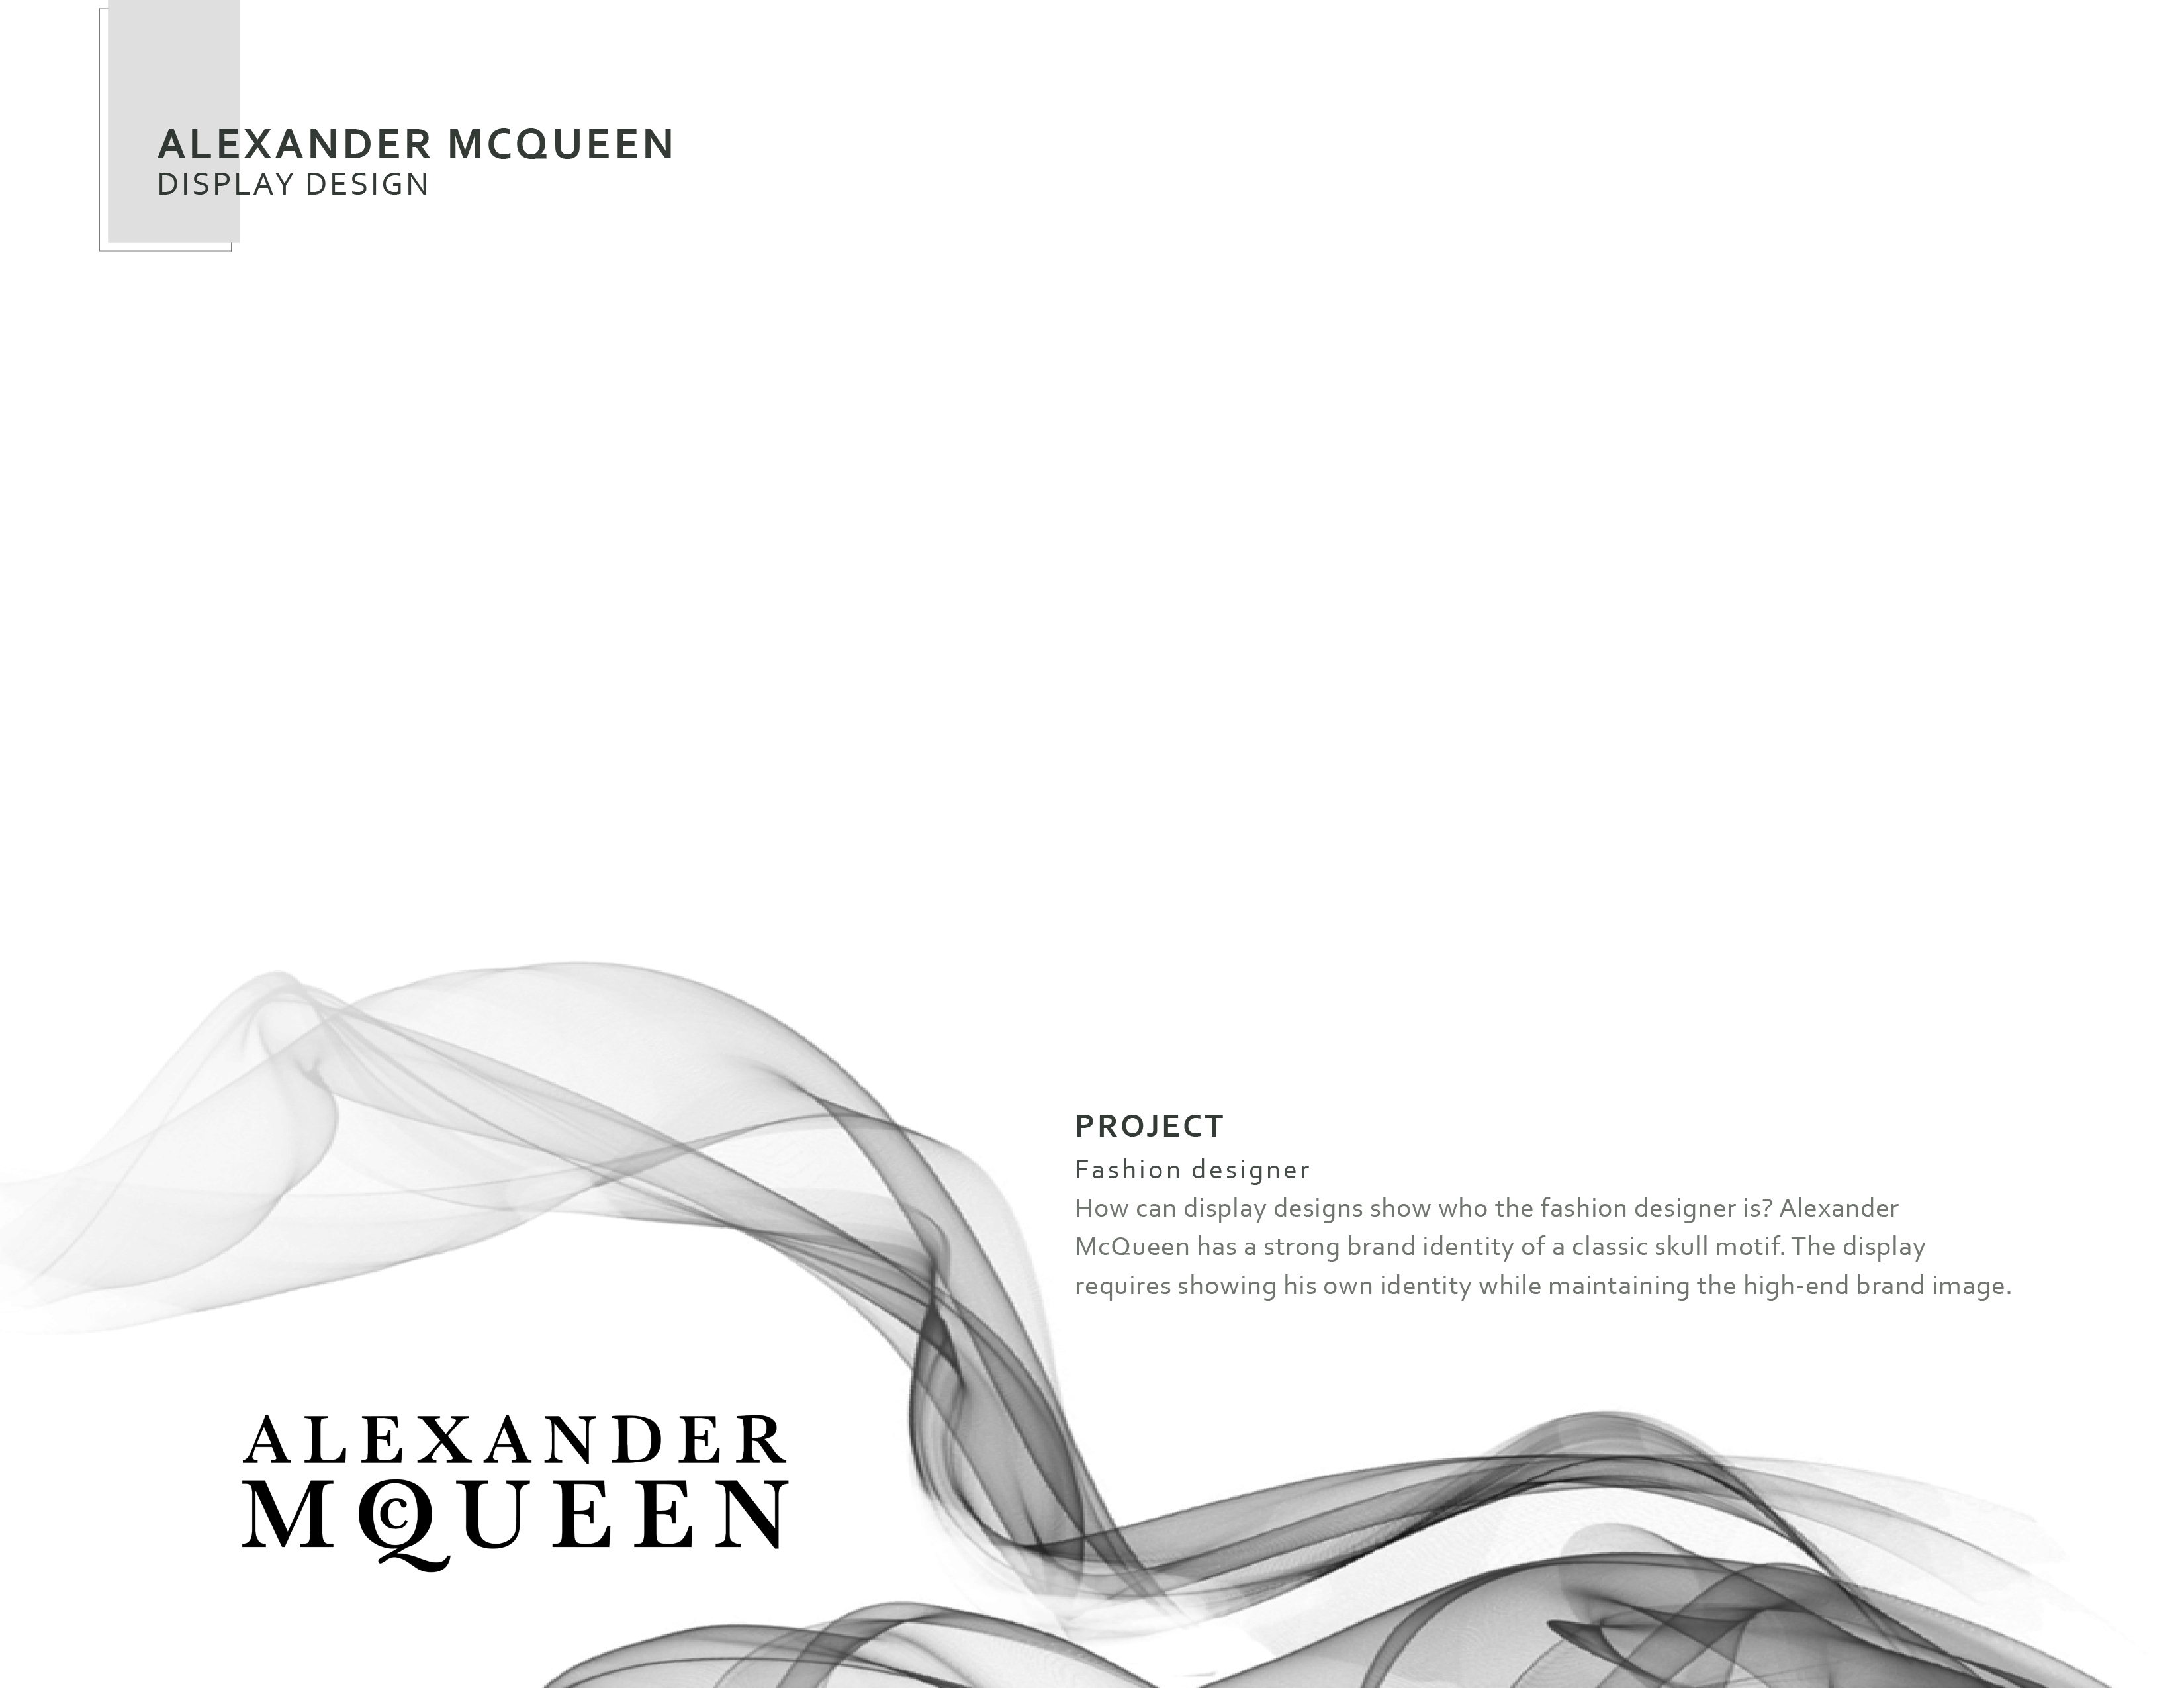 alexander mcqueen brand identity